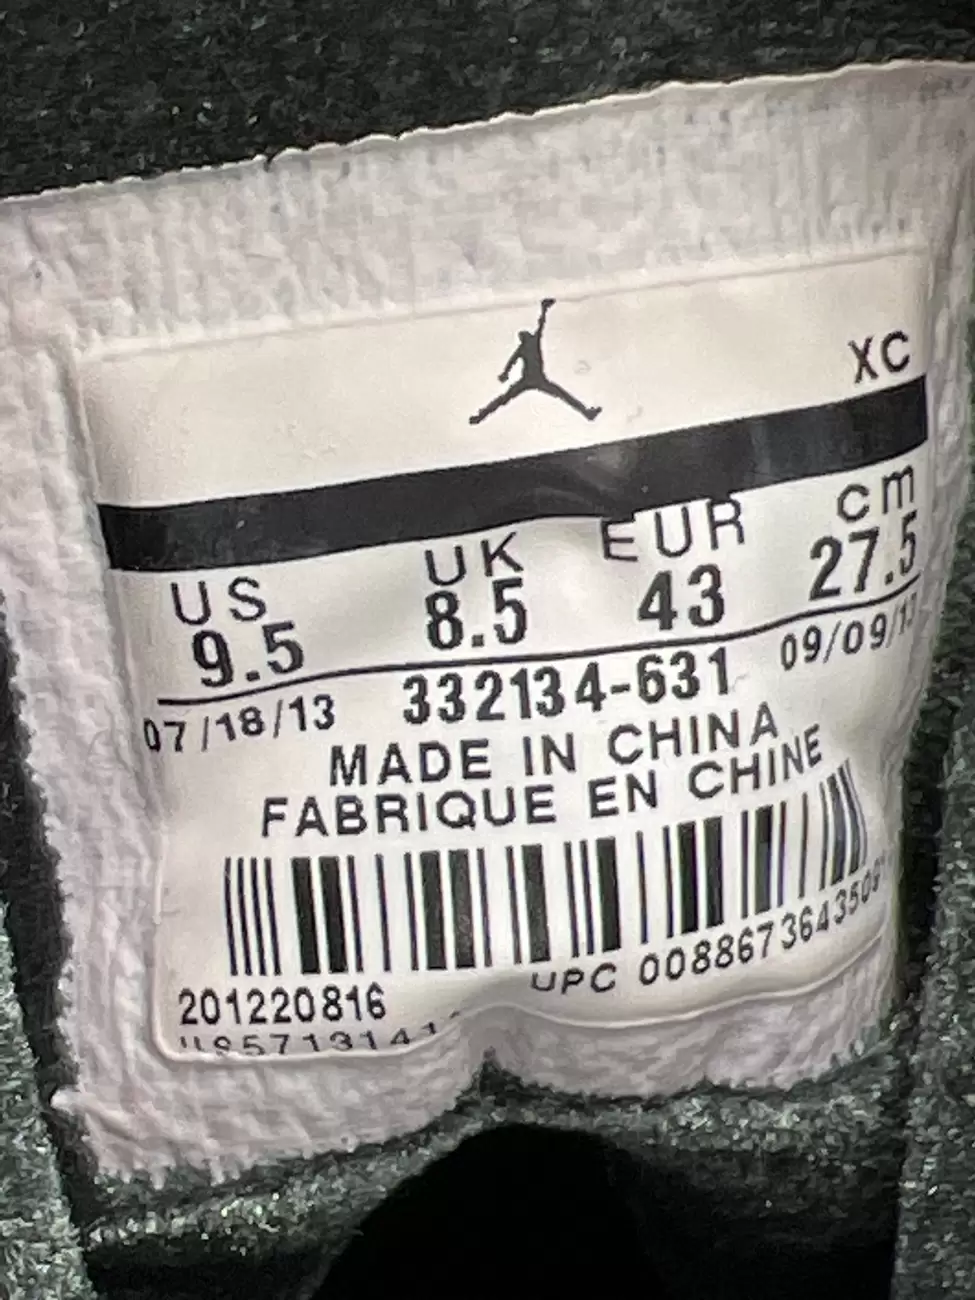 Buy Air Jordan 1 Retro Hi Premier 'Gucci' 2013 - 332134 631